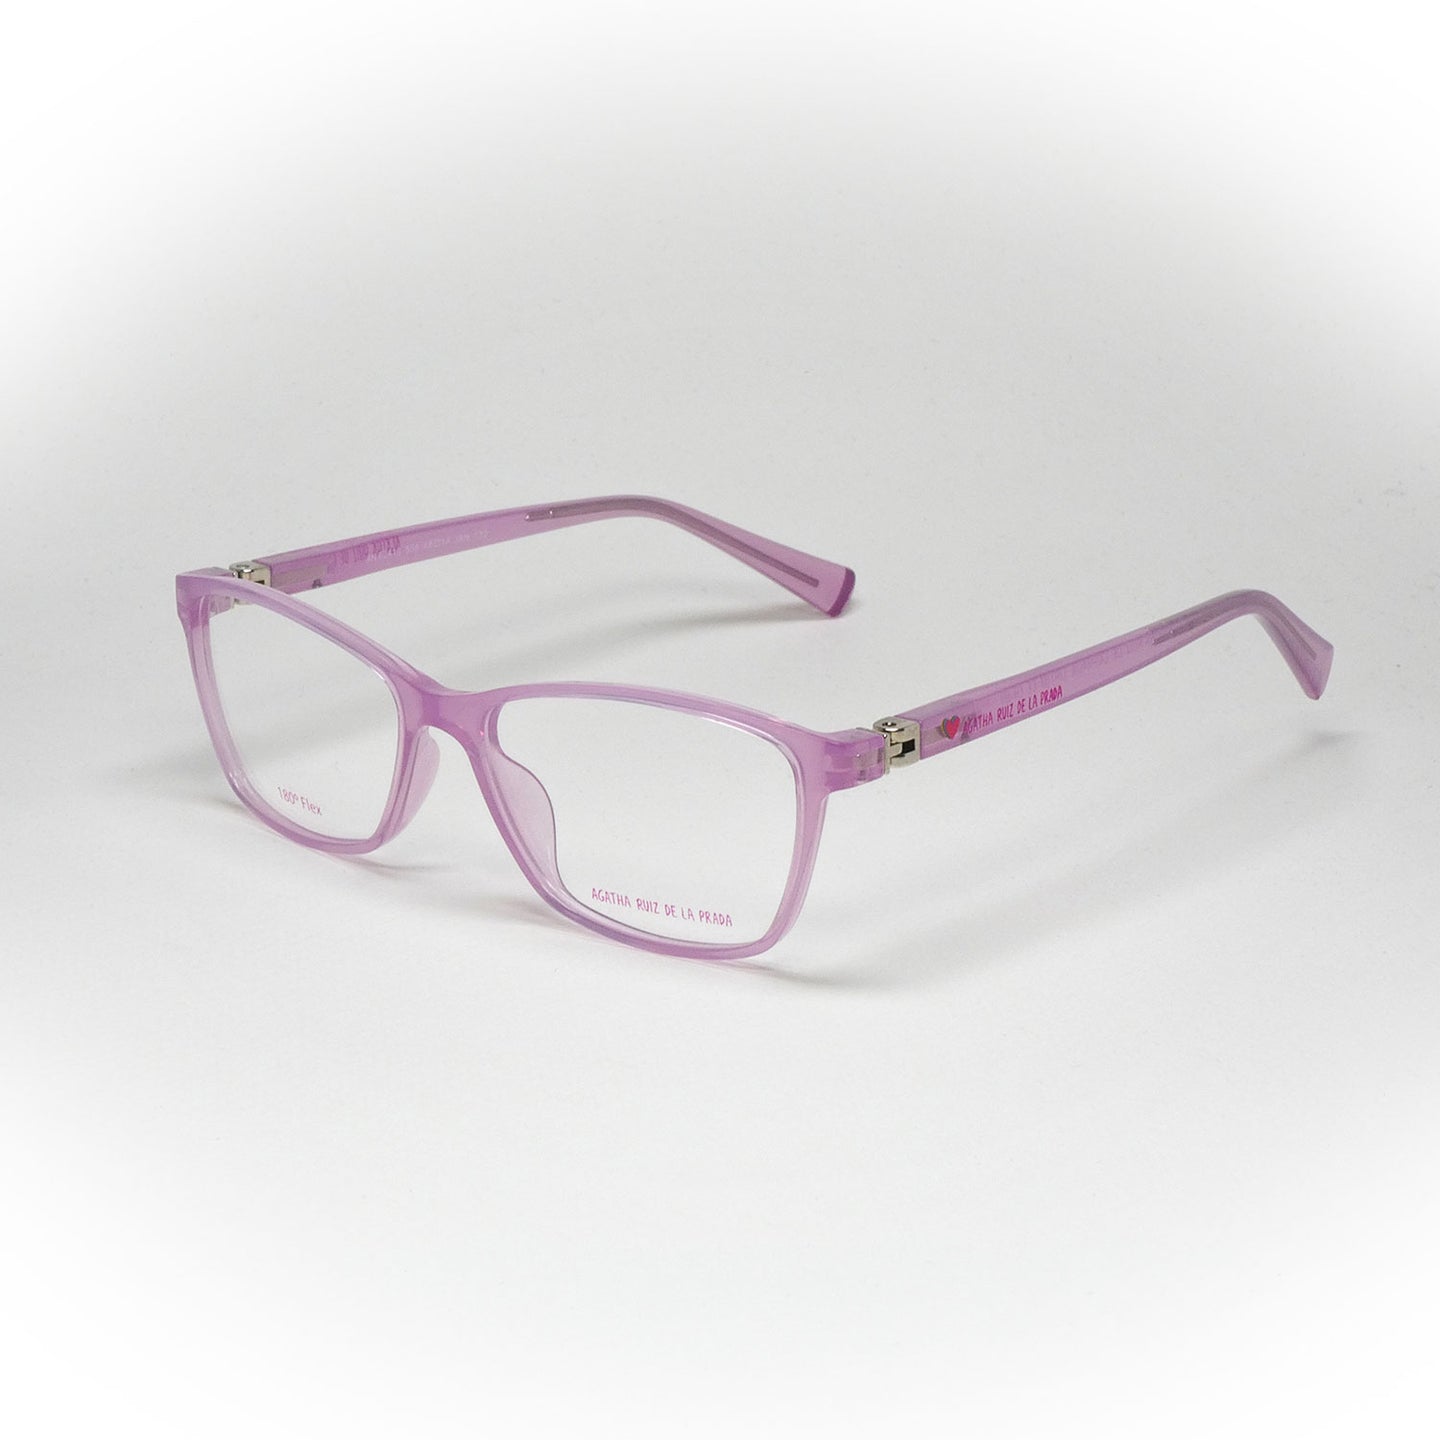 glasses agatha ruiz de la prada an 62410 color 556